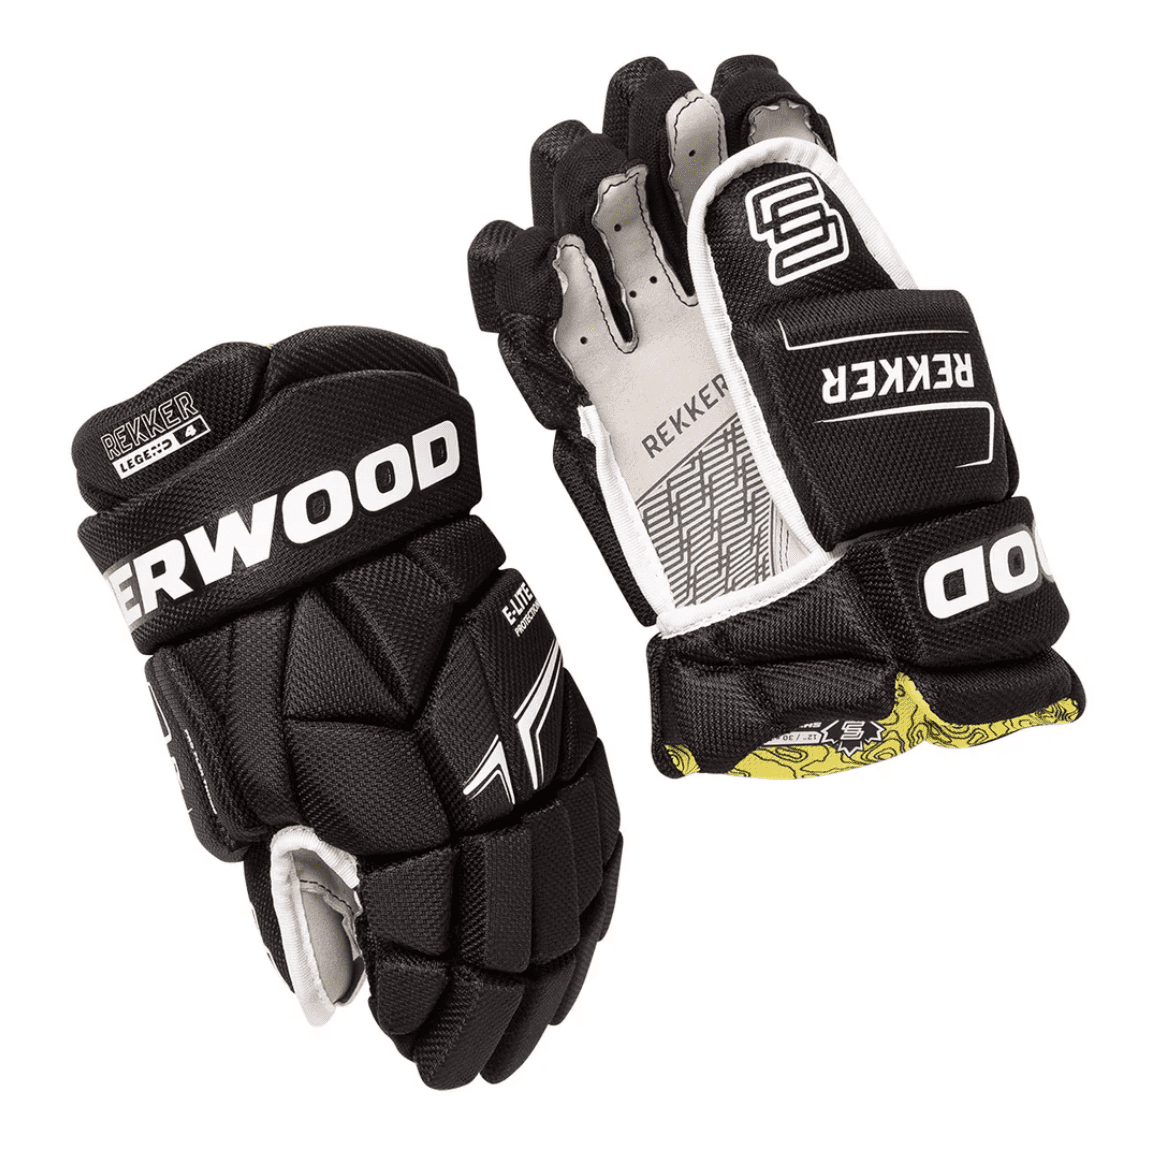 Sherwood Rekker Legend 4 Hockey Gloves